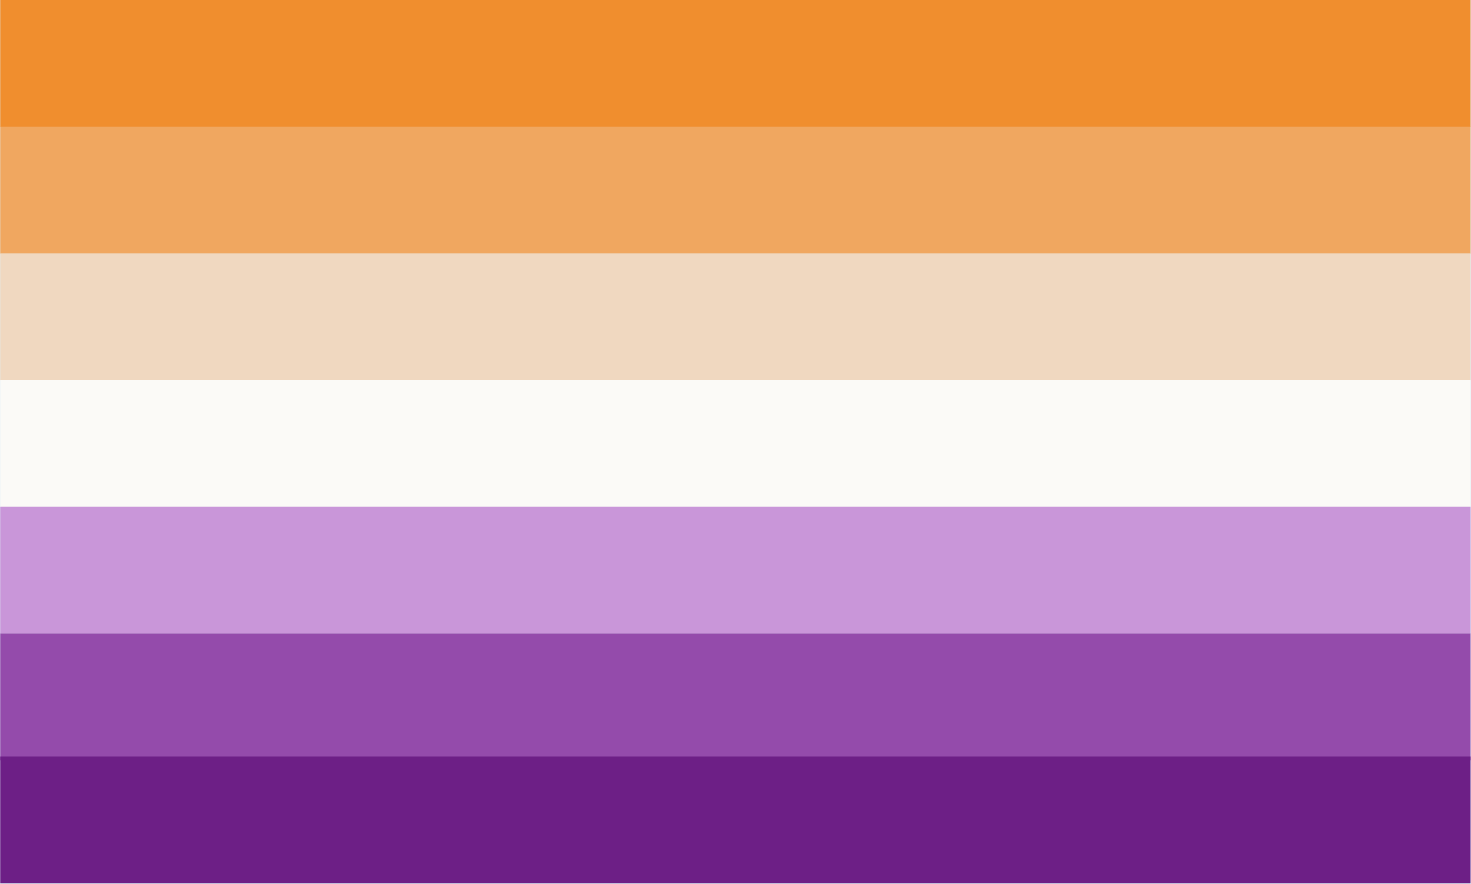 Pourquoi n'existe-t'il pas de drapeau violet ? Blog by Macap